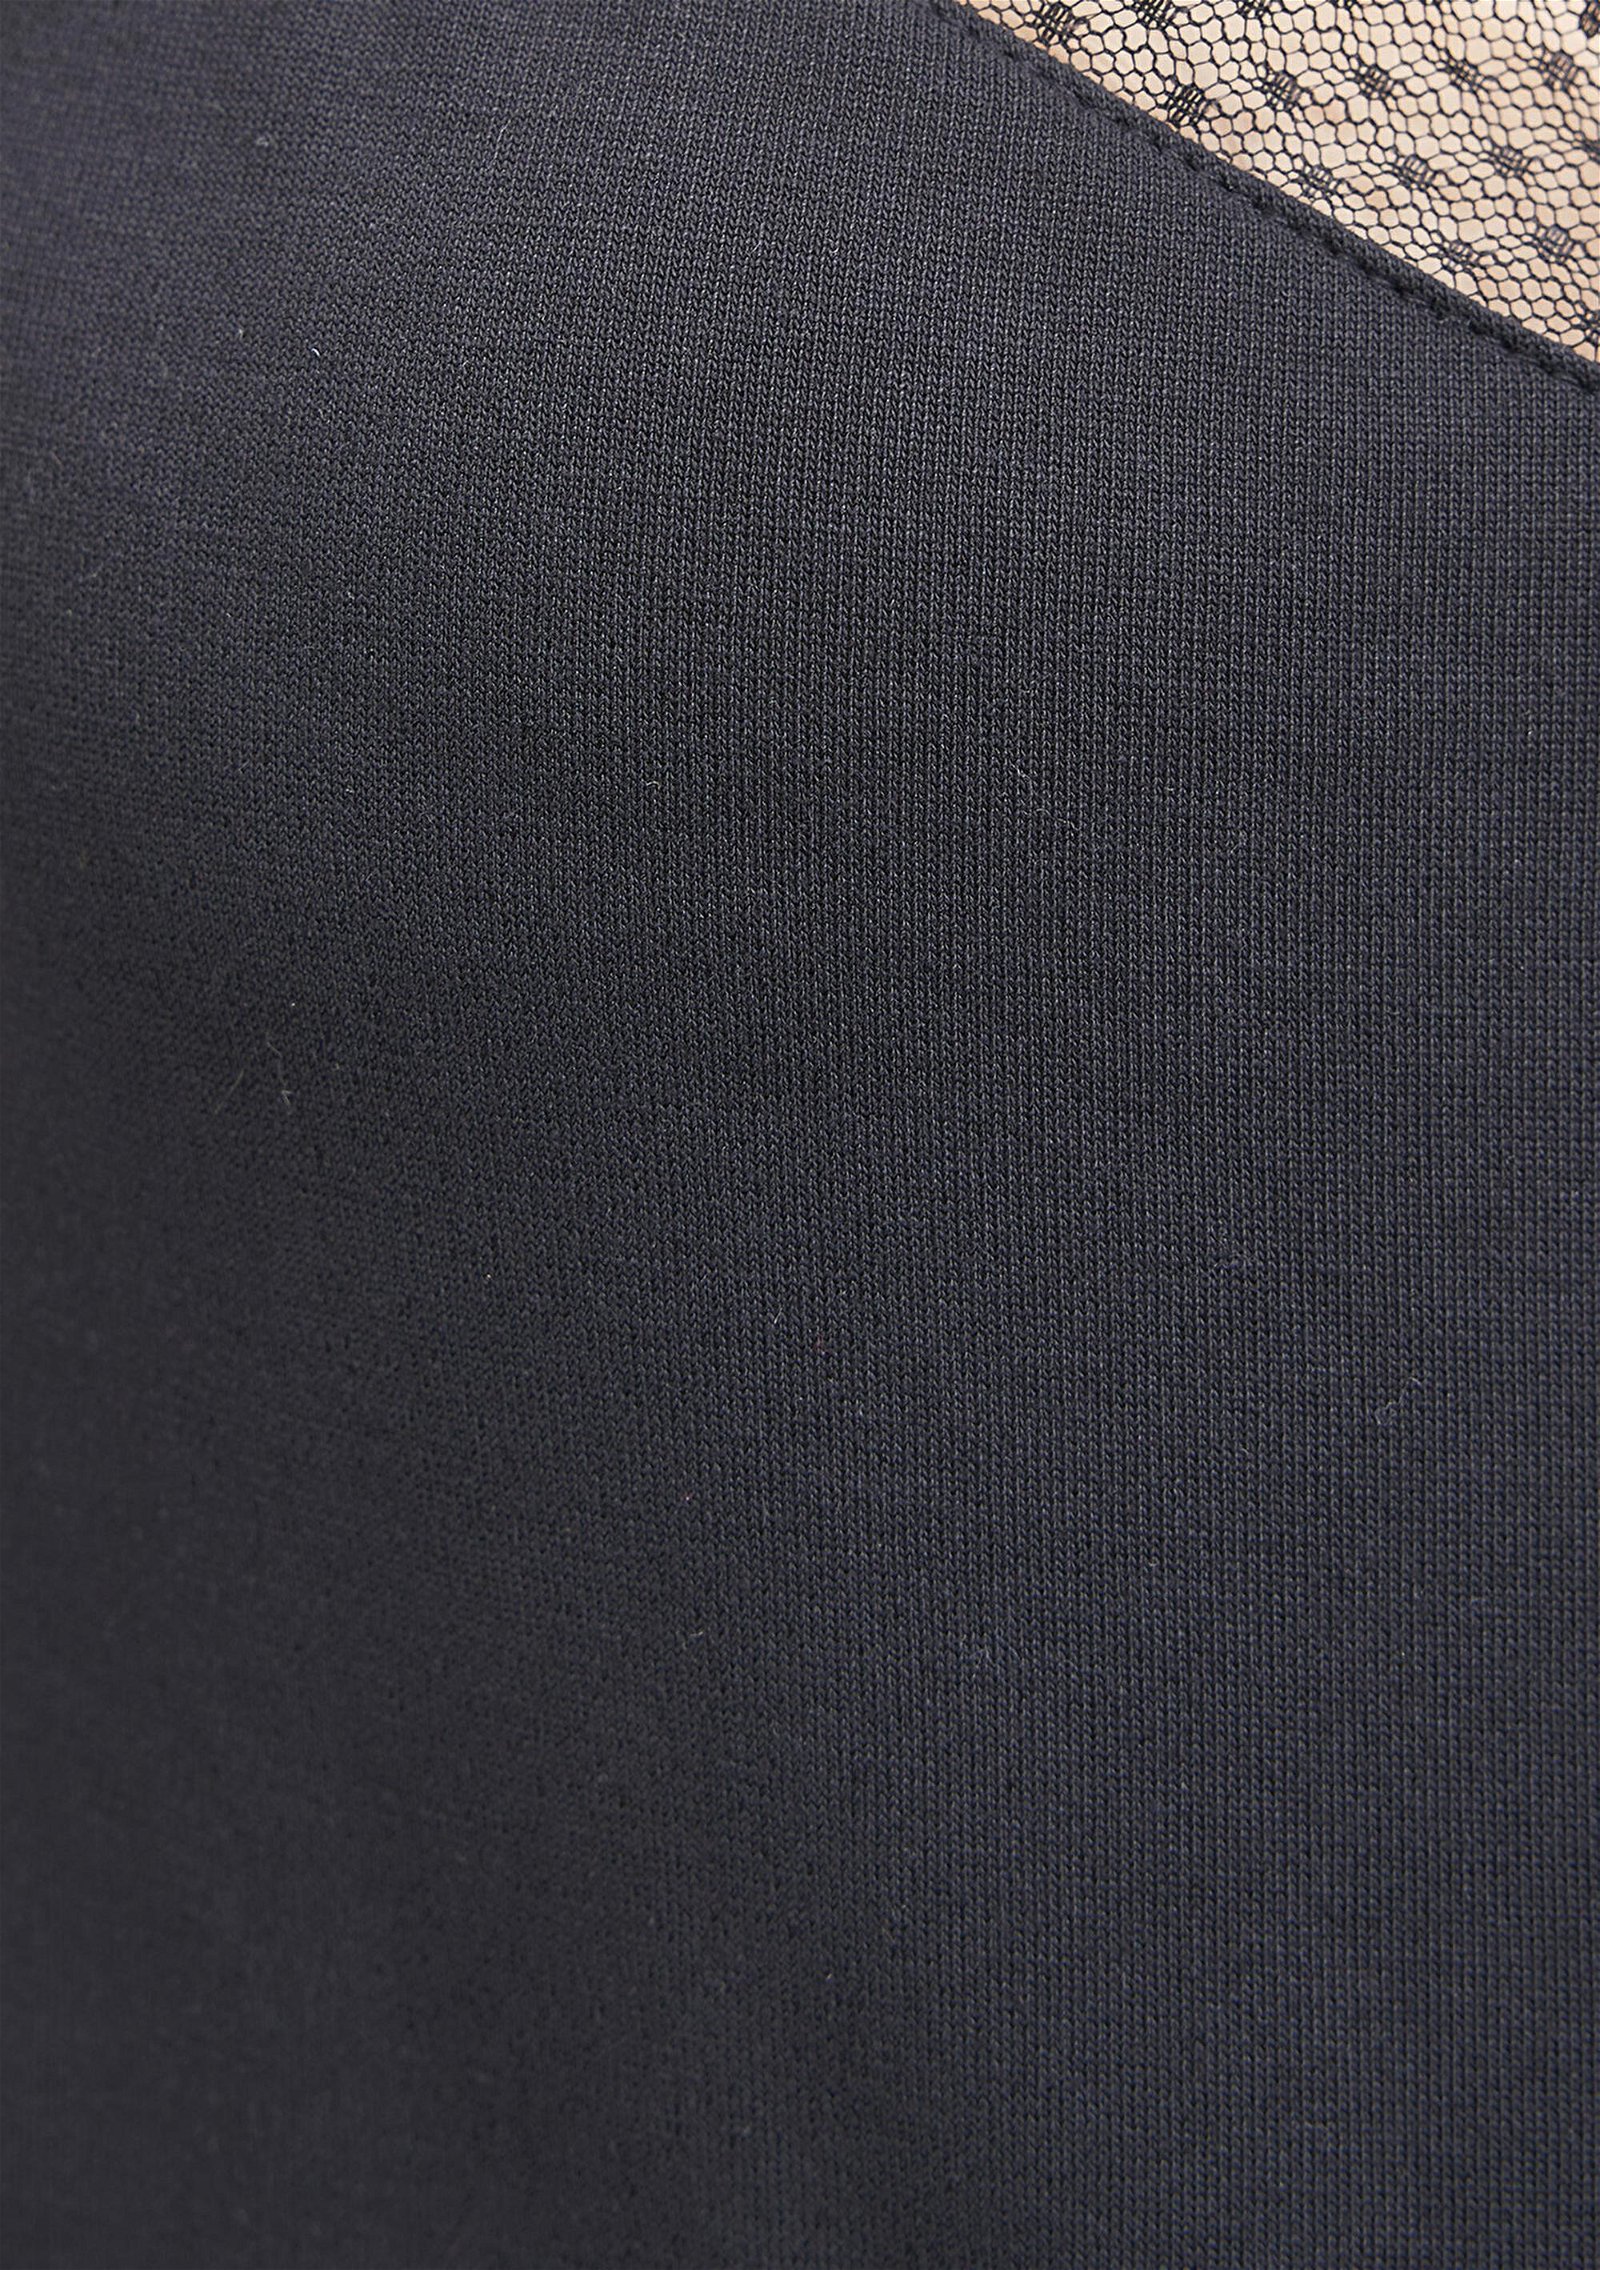 Mavi Dantel Detaylı İnce Askılı Siyah Top Slim Fit / Dar Kesim 1612198-900